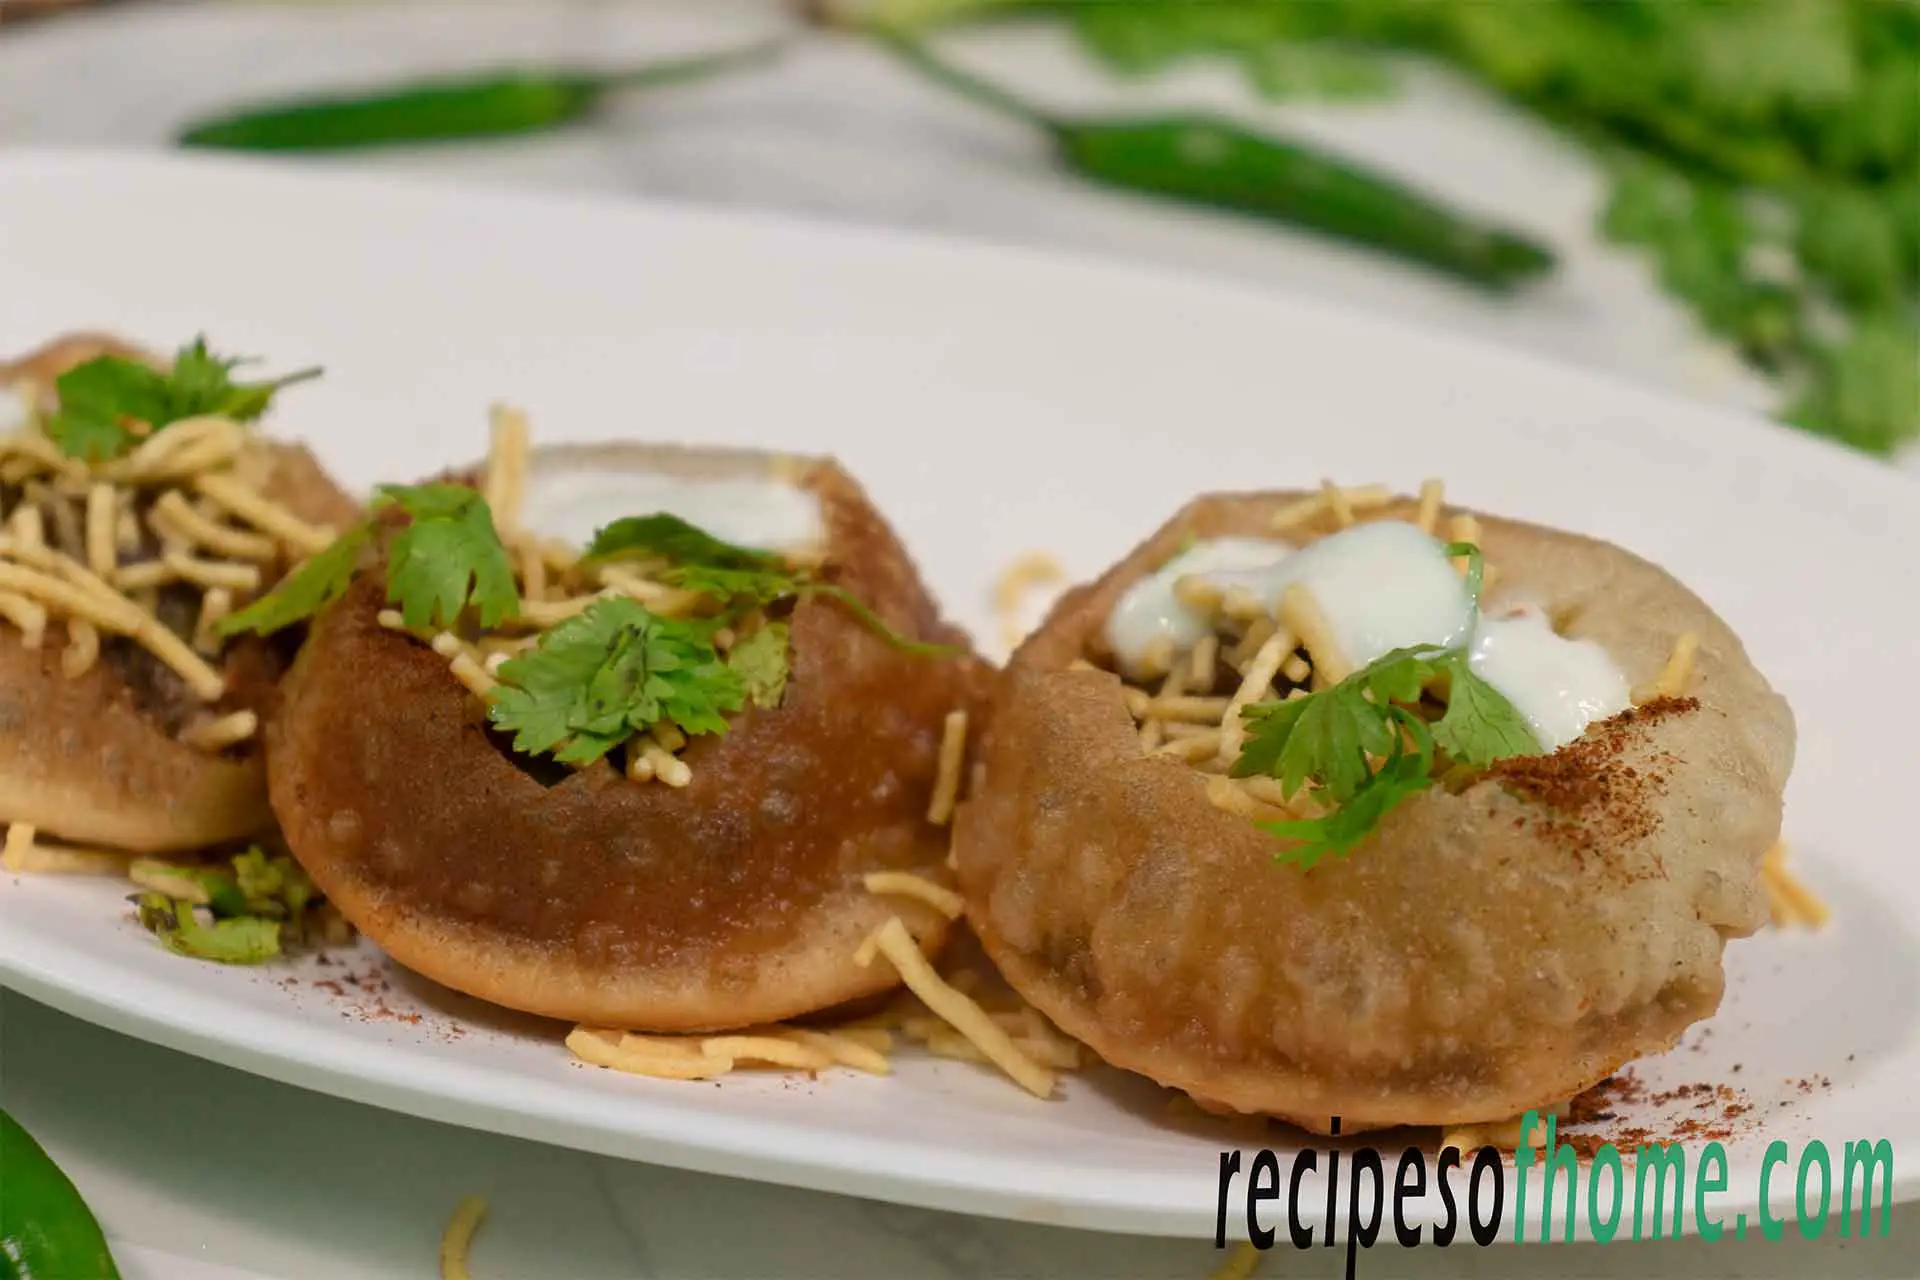 Dahi puri recipe | Dahi batata puri recipe | How to make dahi puri